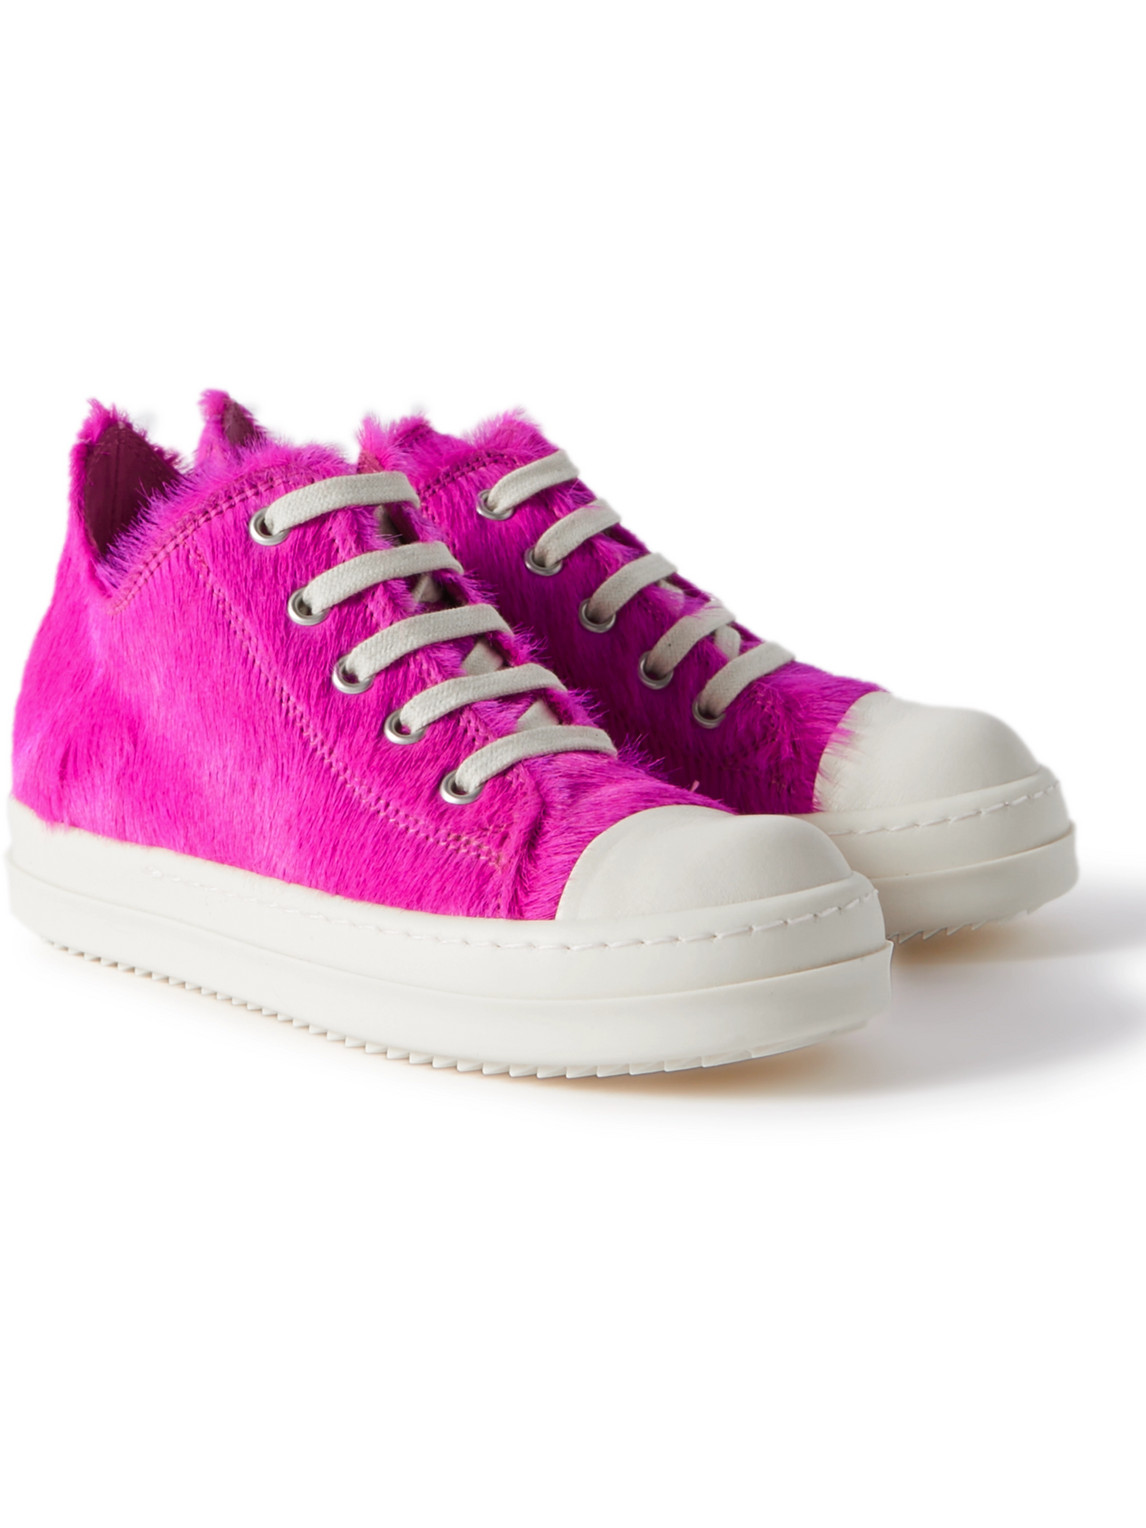 Rick Owens Calf Hair Sneakers In Pink